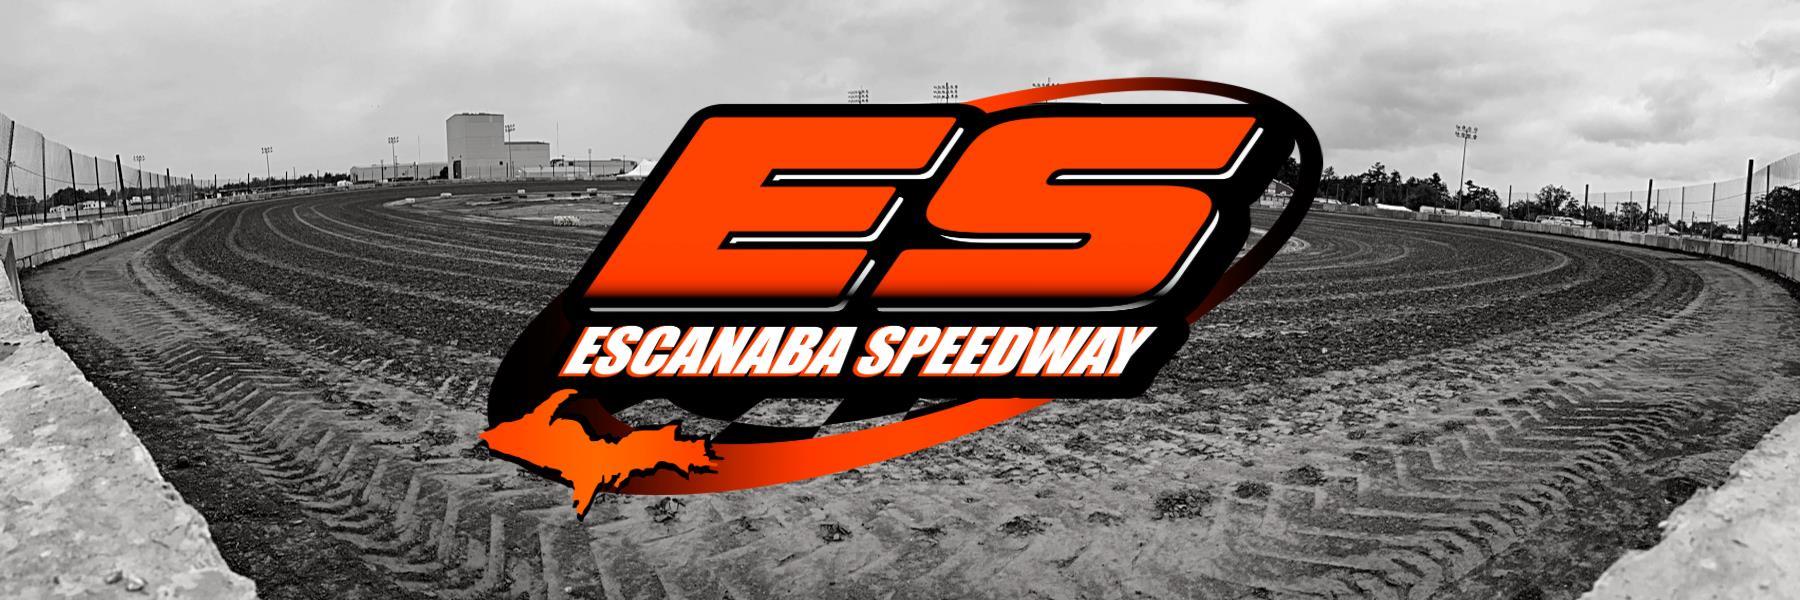 9/17/2021 - Escanaba Speedway